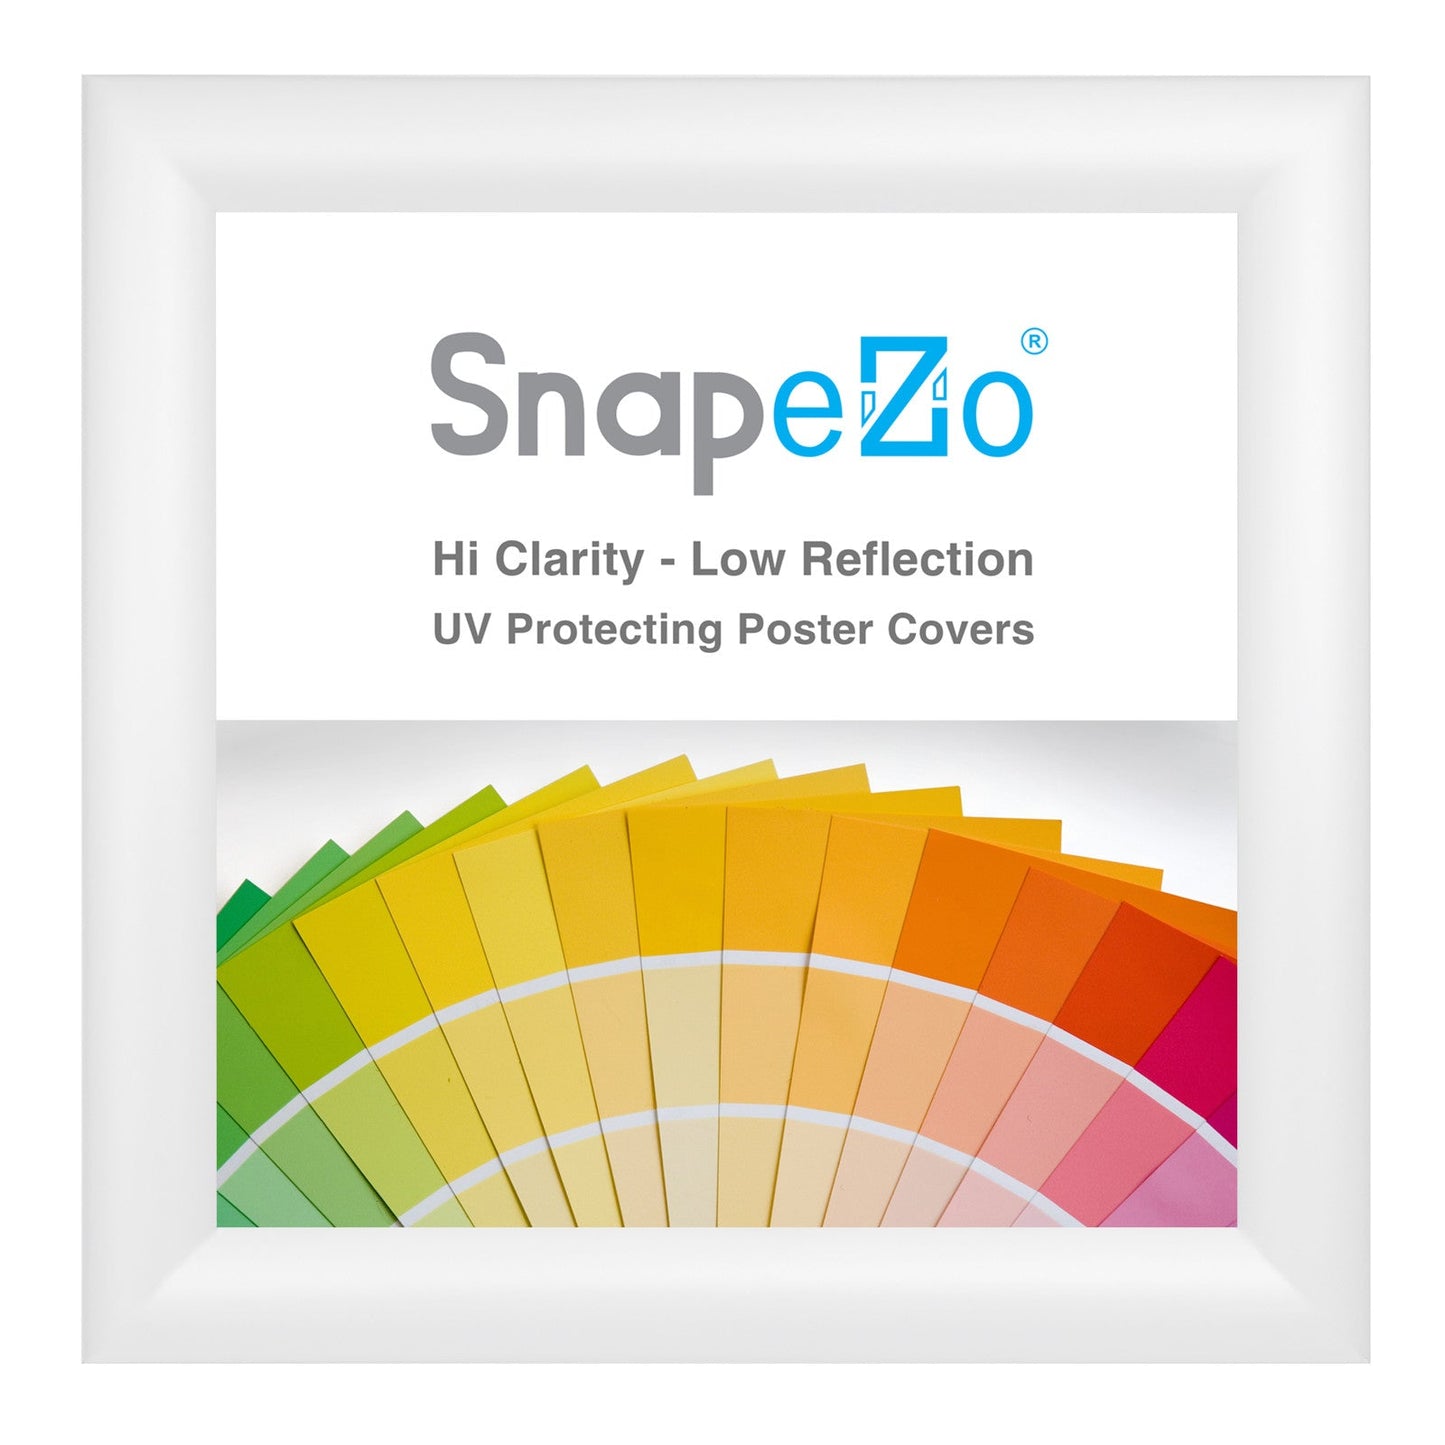 10x10 White SnapeZo® Snap Frame - 1.2" Profile